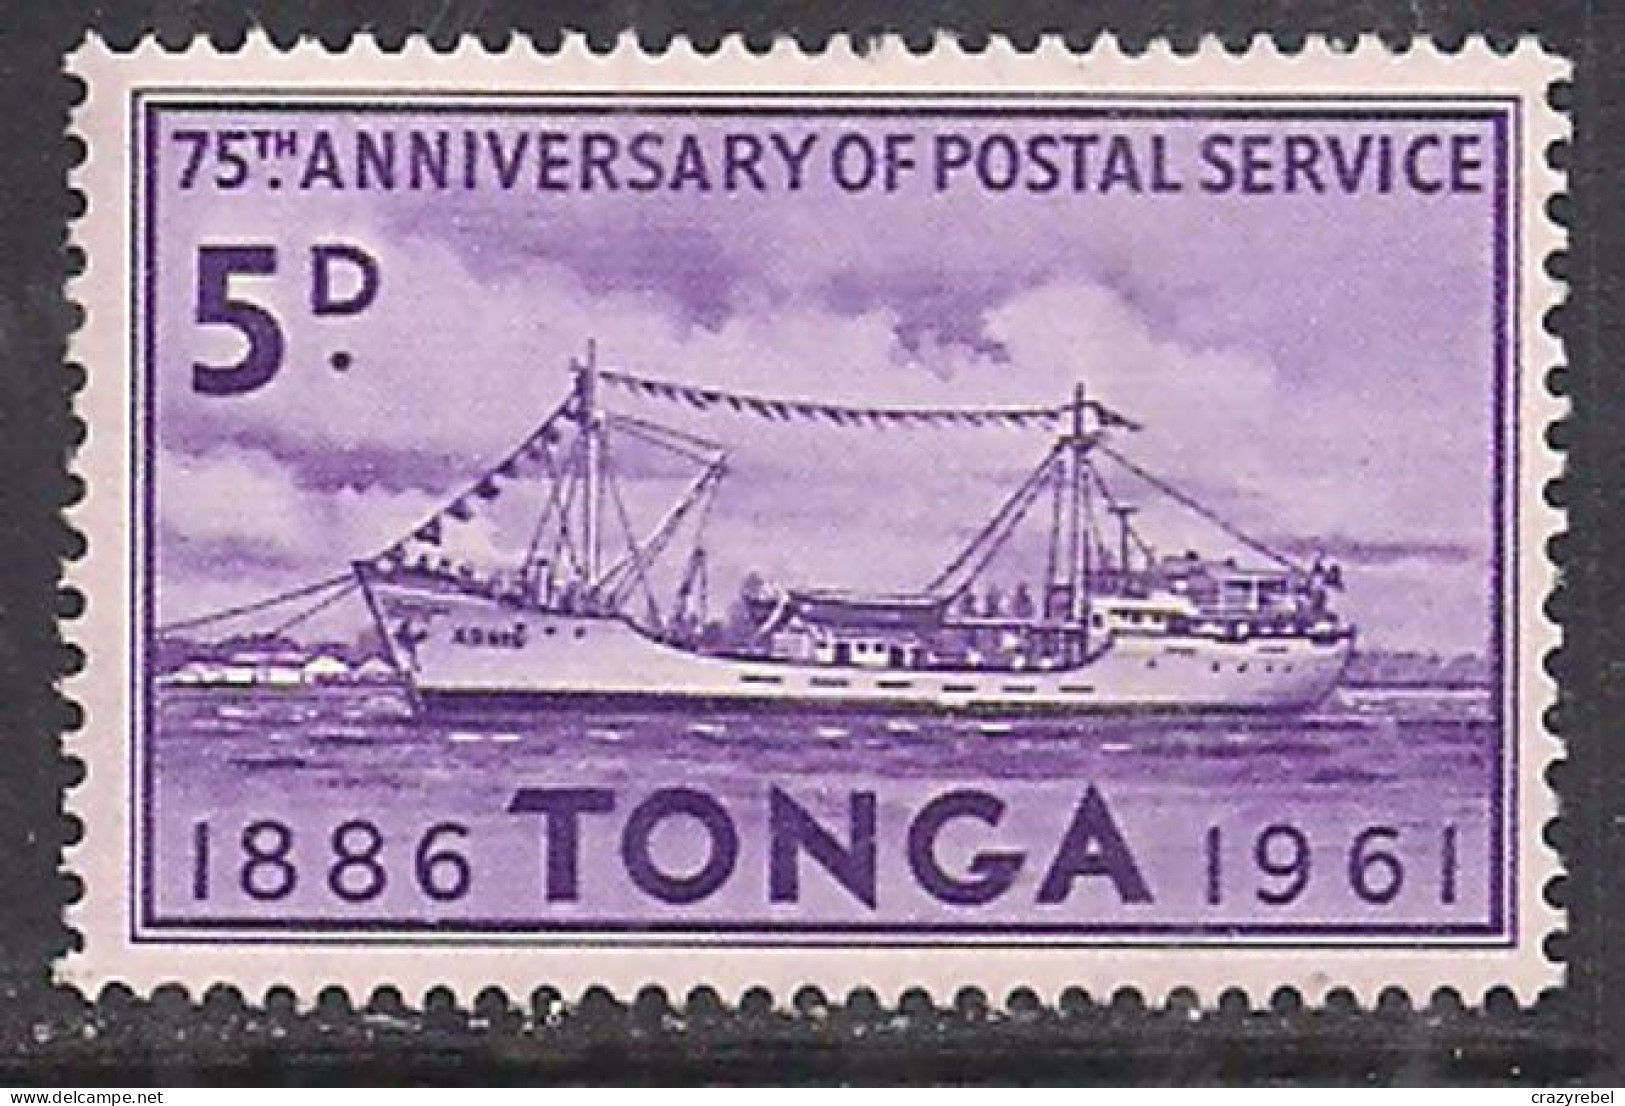 Tonga 1961 QE2 5d Anniv. Postal Service MLH SG 118 ( G524 ) - Tonga (...-1970)